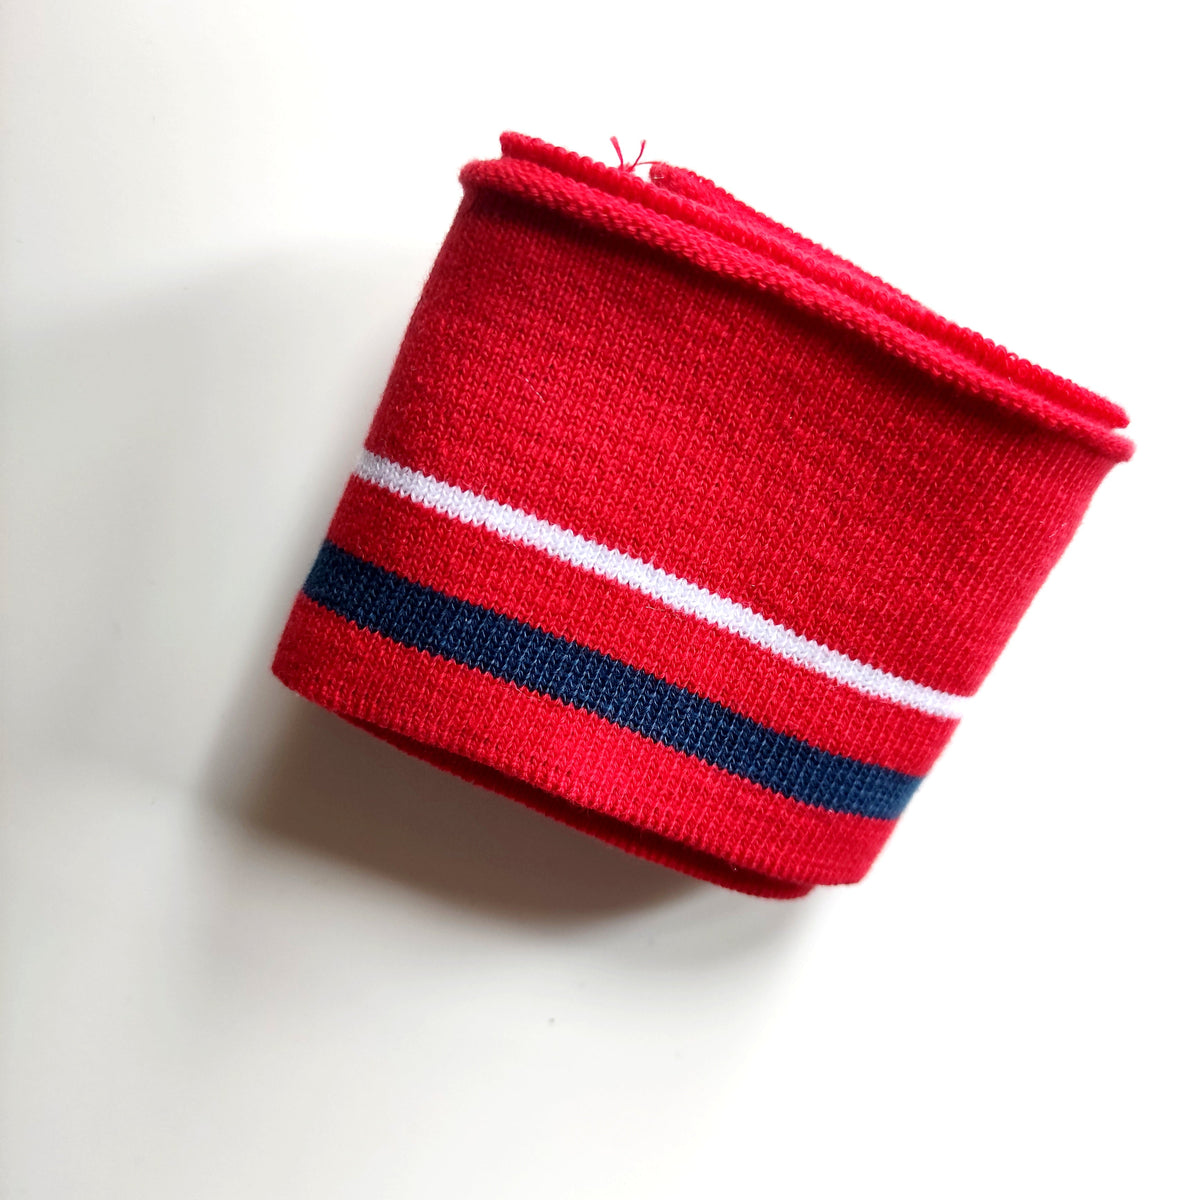 Cuff Jacquard Bündchen - rot weiße Streifen Paket poshpinks